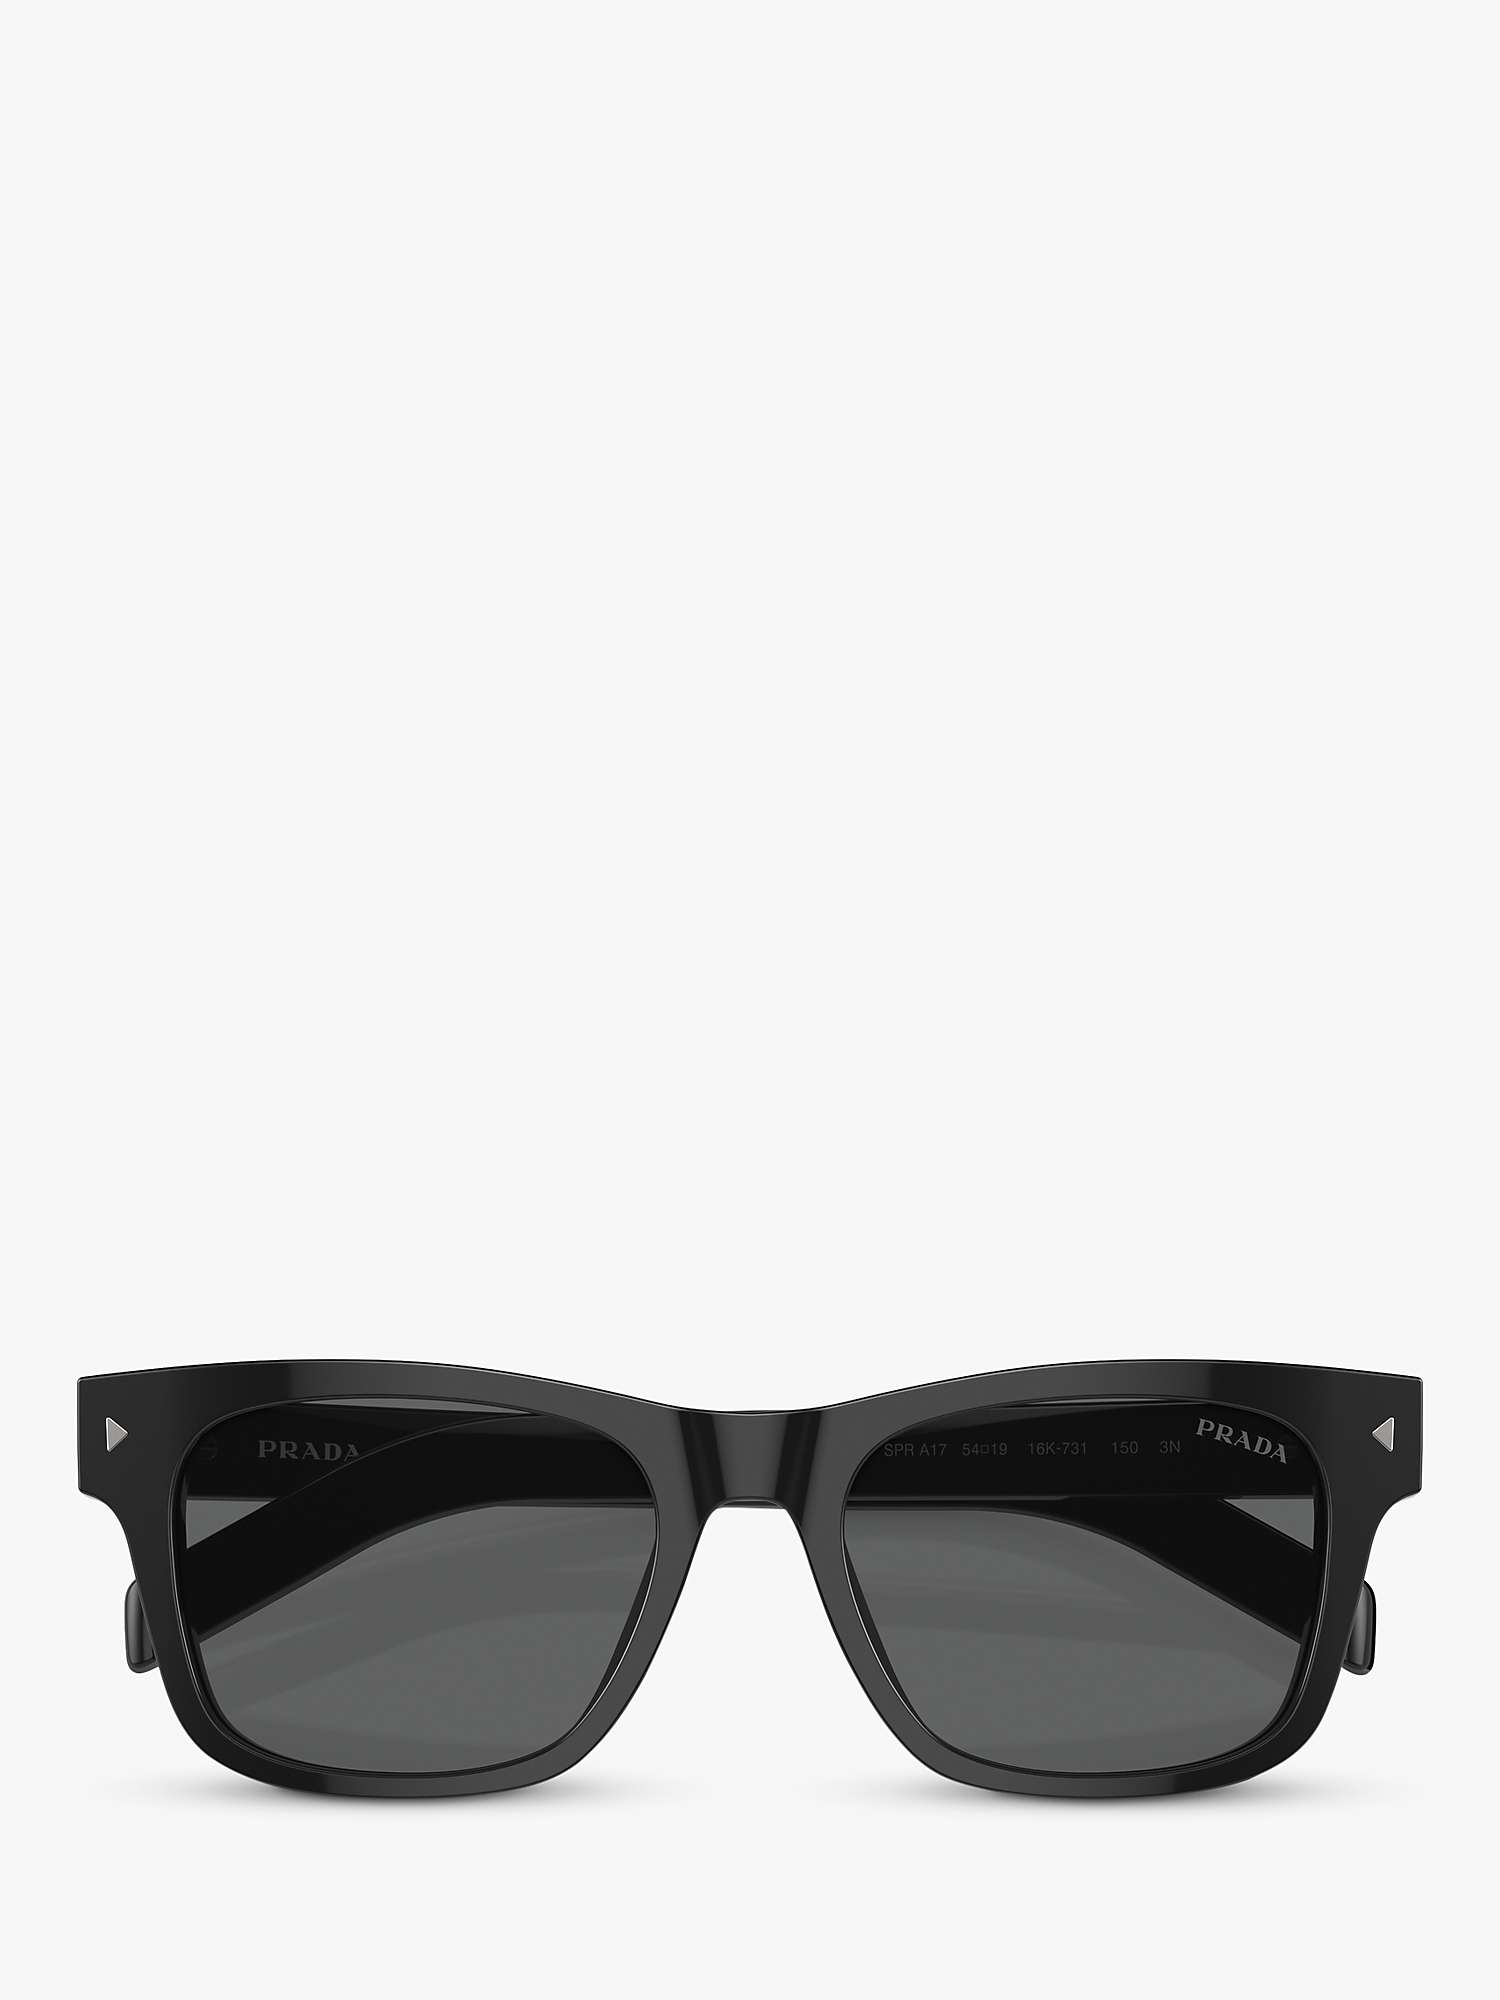 Buy Prada PR A17S Men's D-Frame Sunglasses Online at johnlewis.com